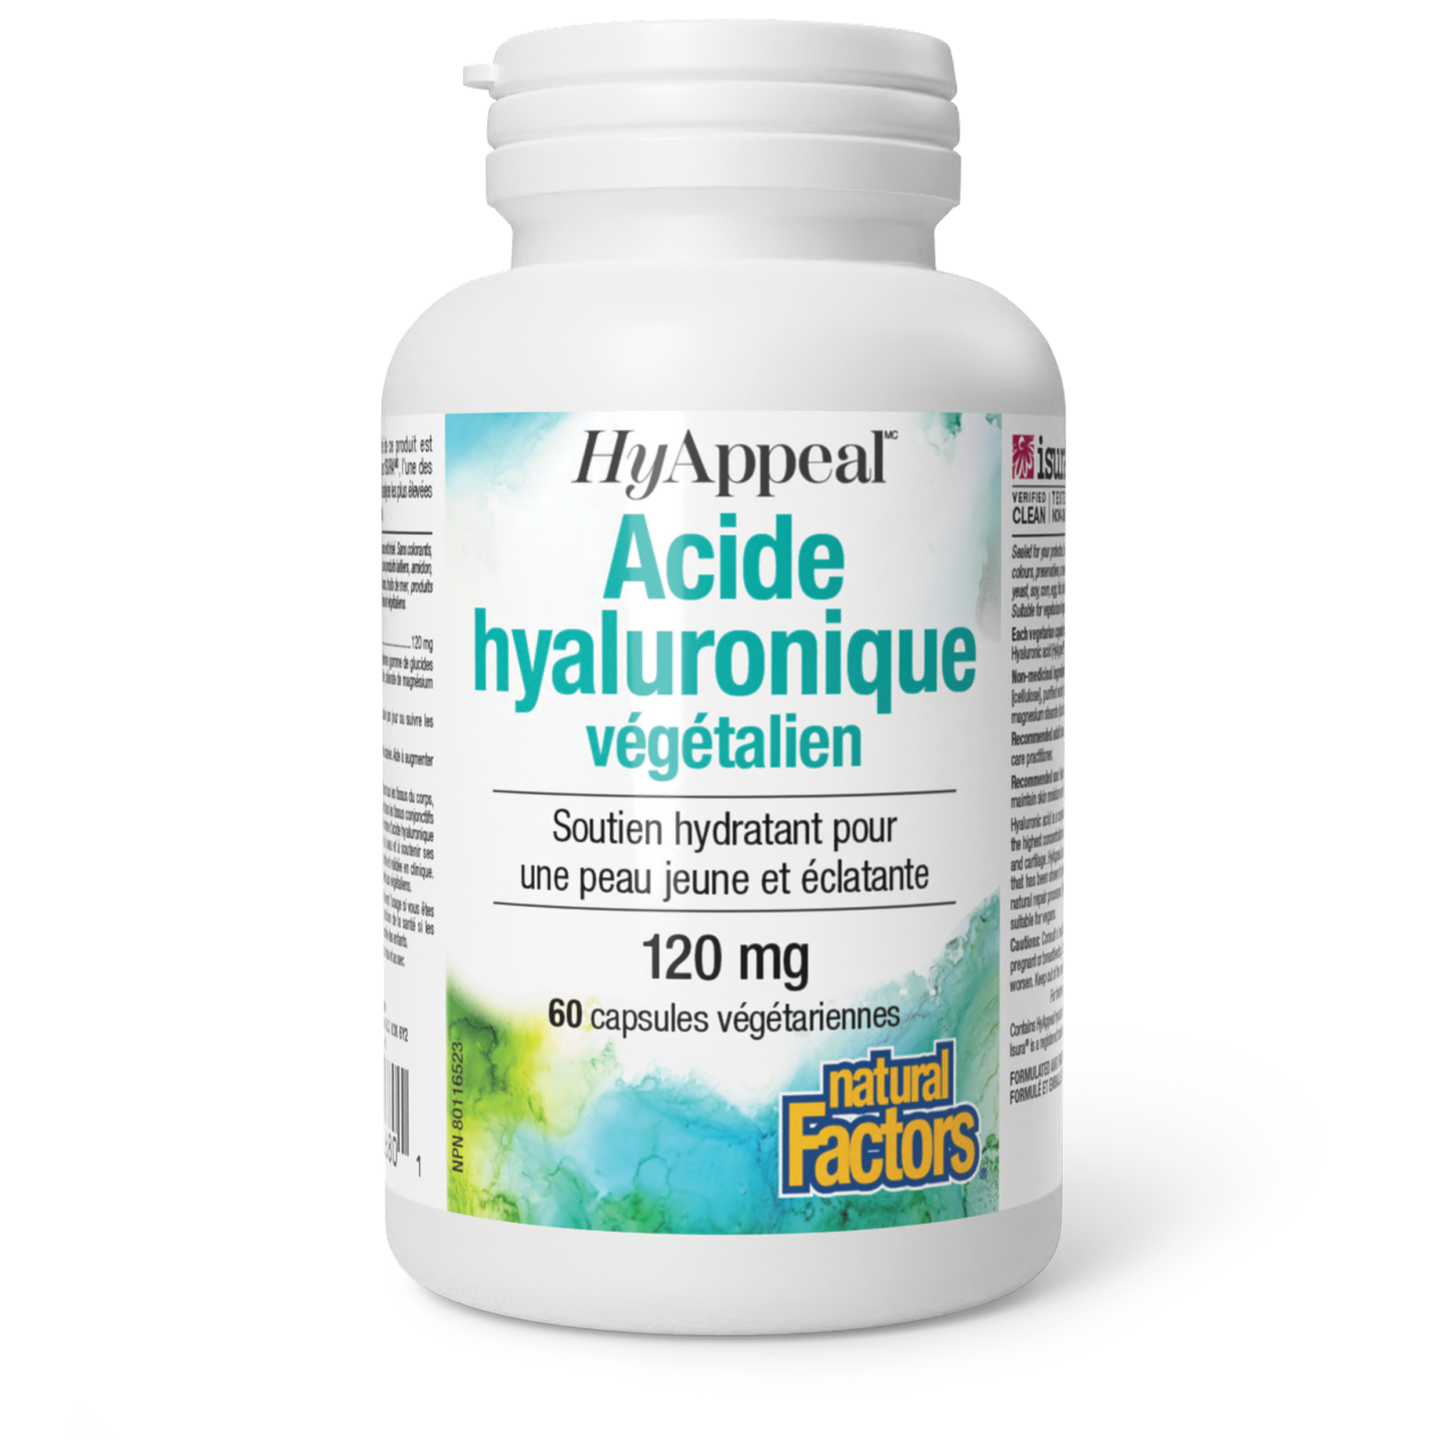 Acide hyaluronique végétalien HyAppeal, Natural Factors|v|image|2680